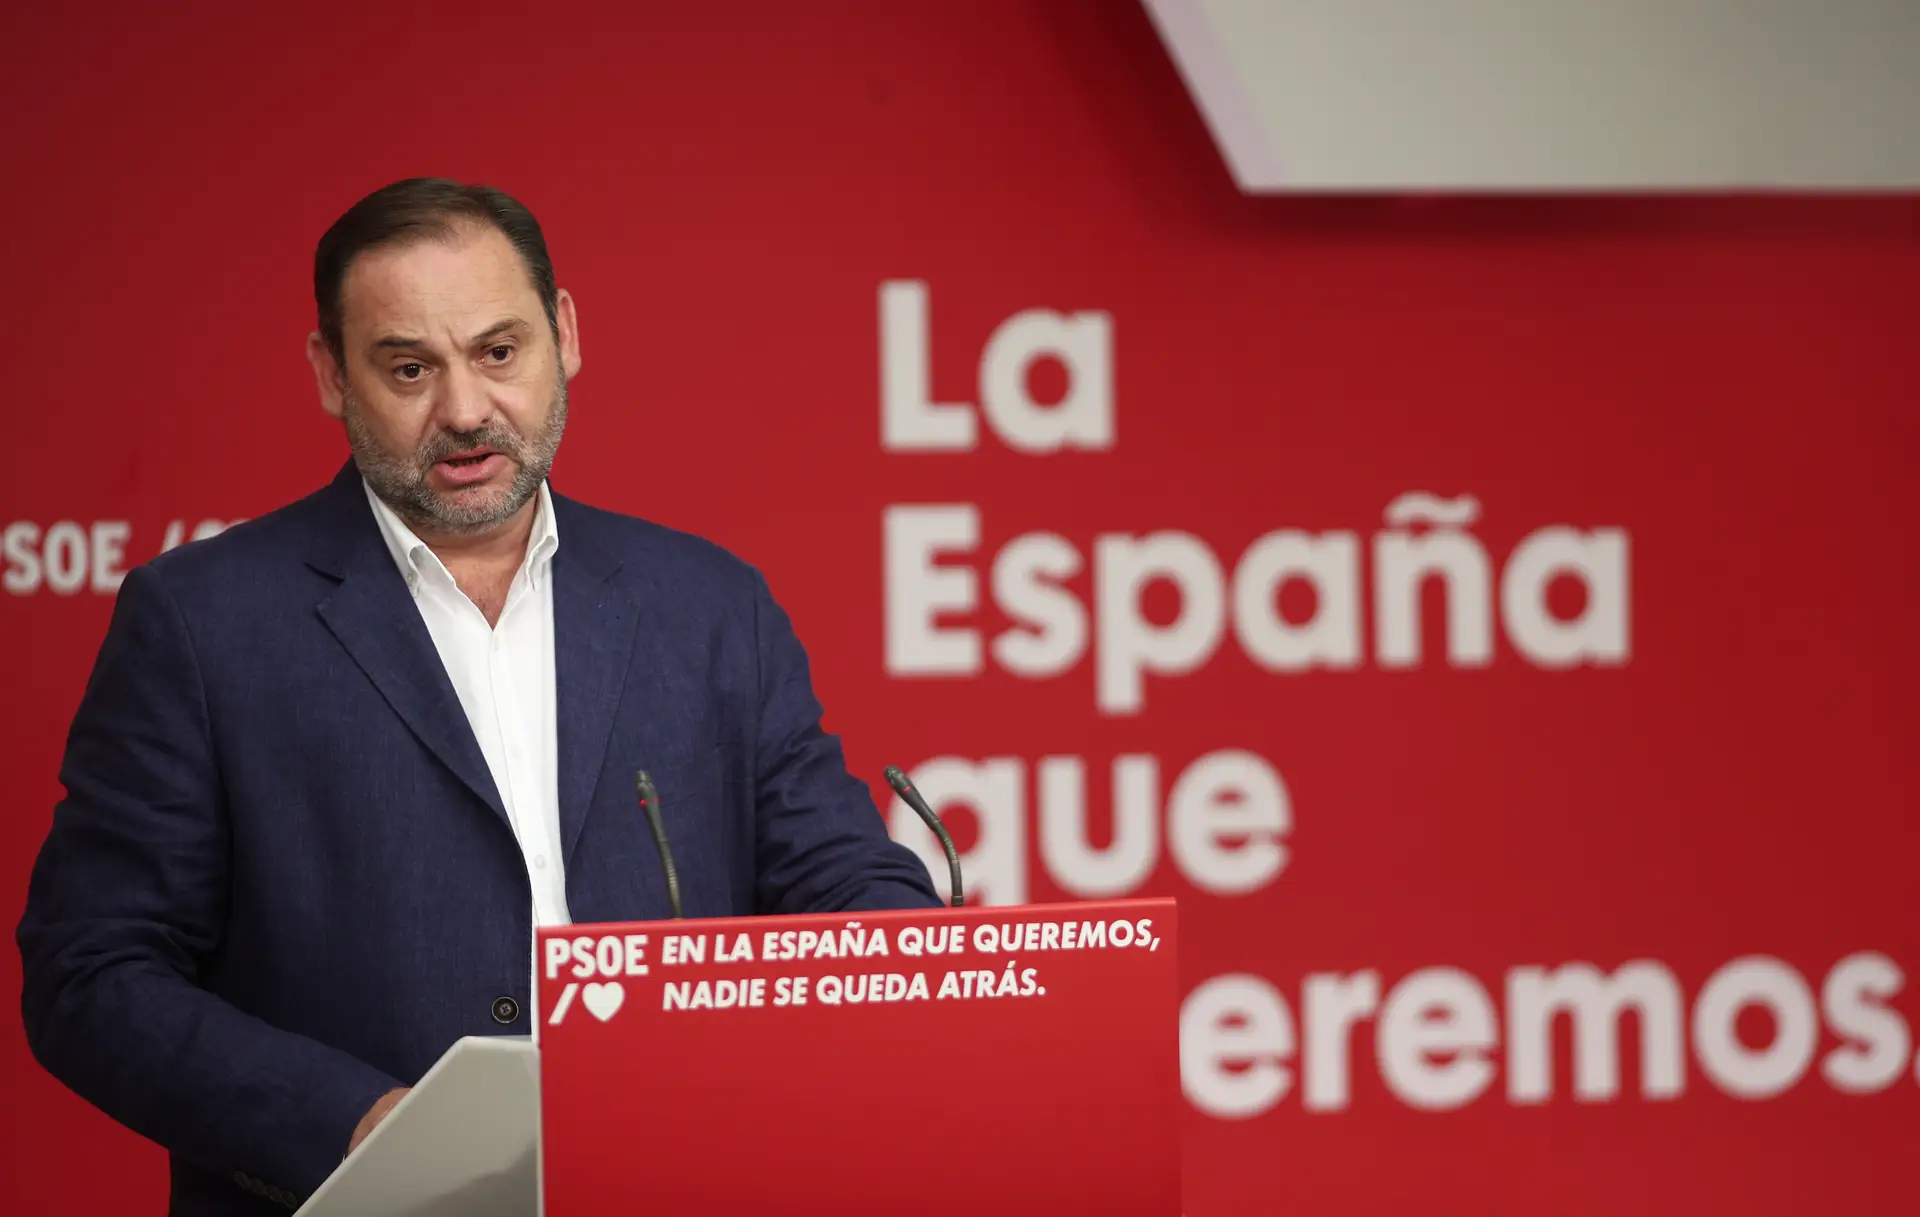 Asunto Koldo: las sospechas de corrupción sacuden al gobierno español